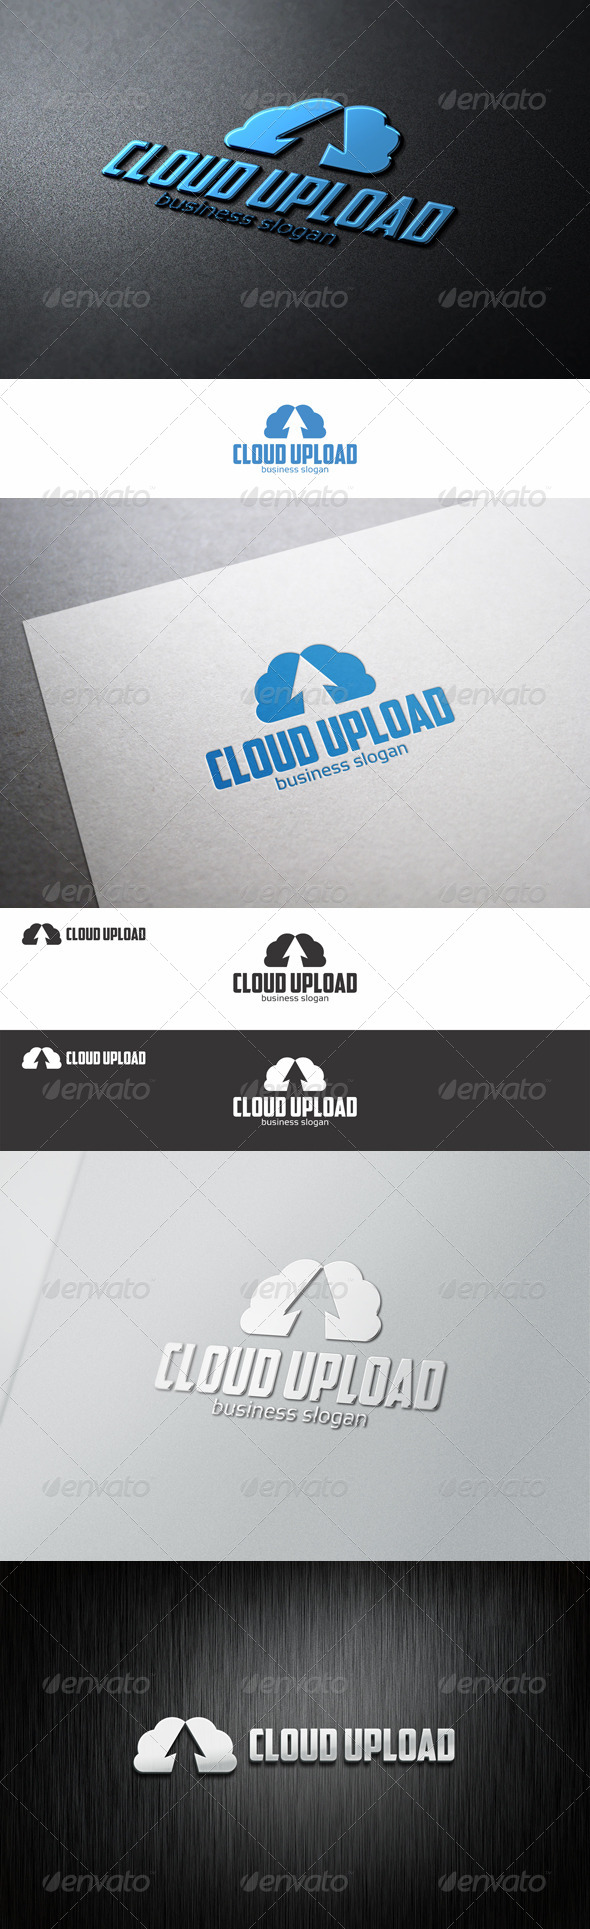 Cloud Up - Upload Hosting Logo